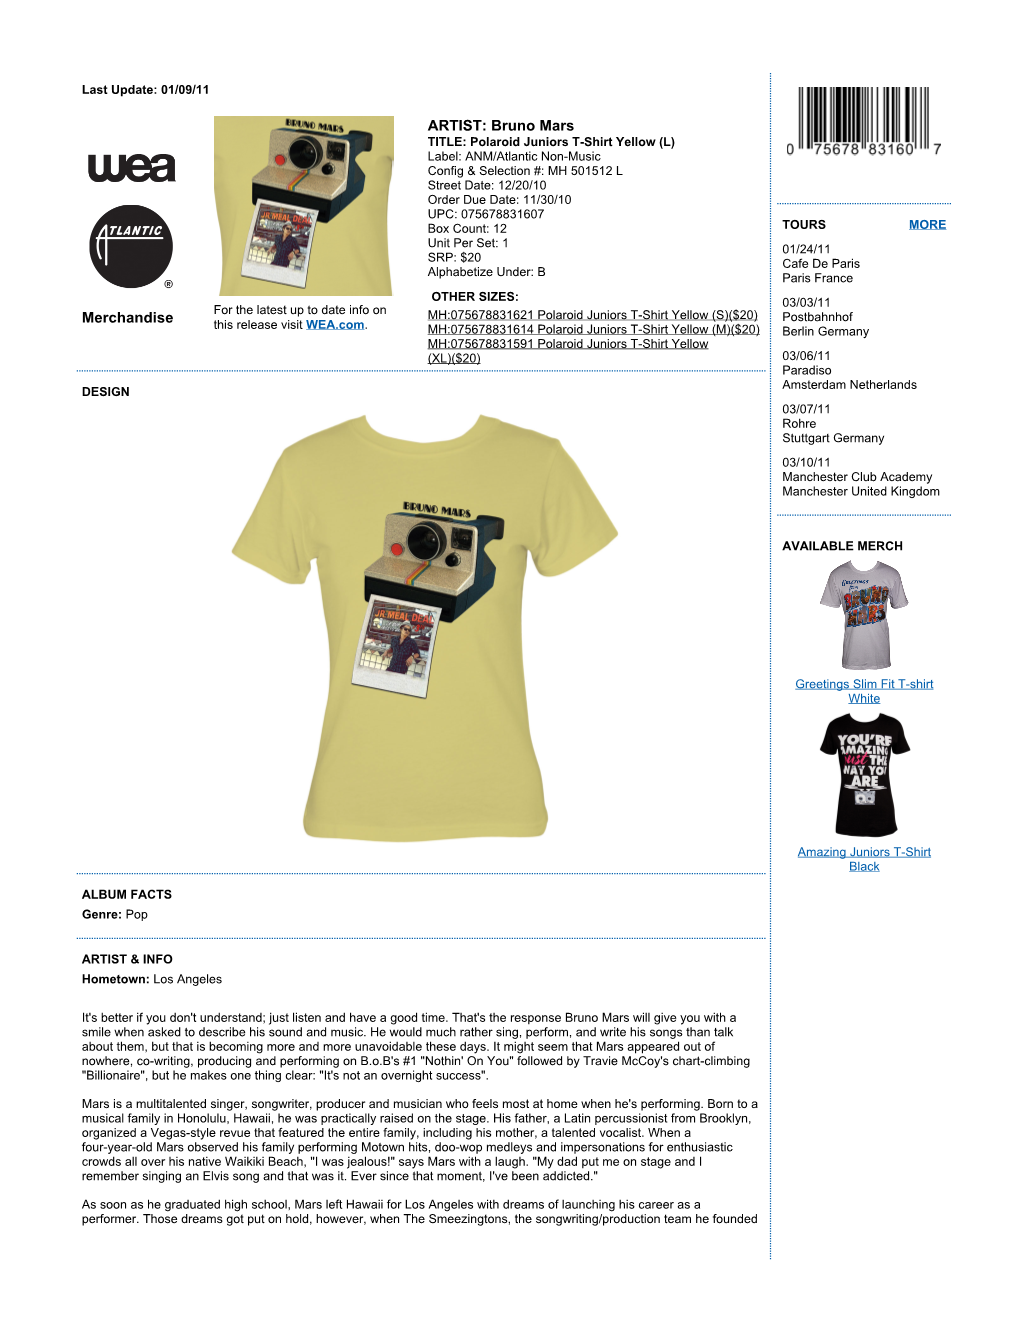 Merchandise ARTIST: Bruno Mars